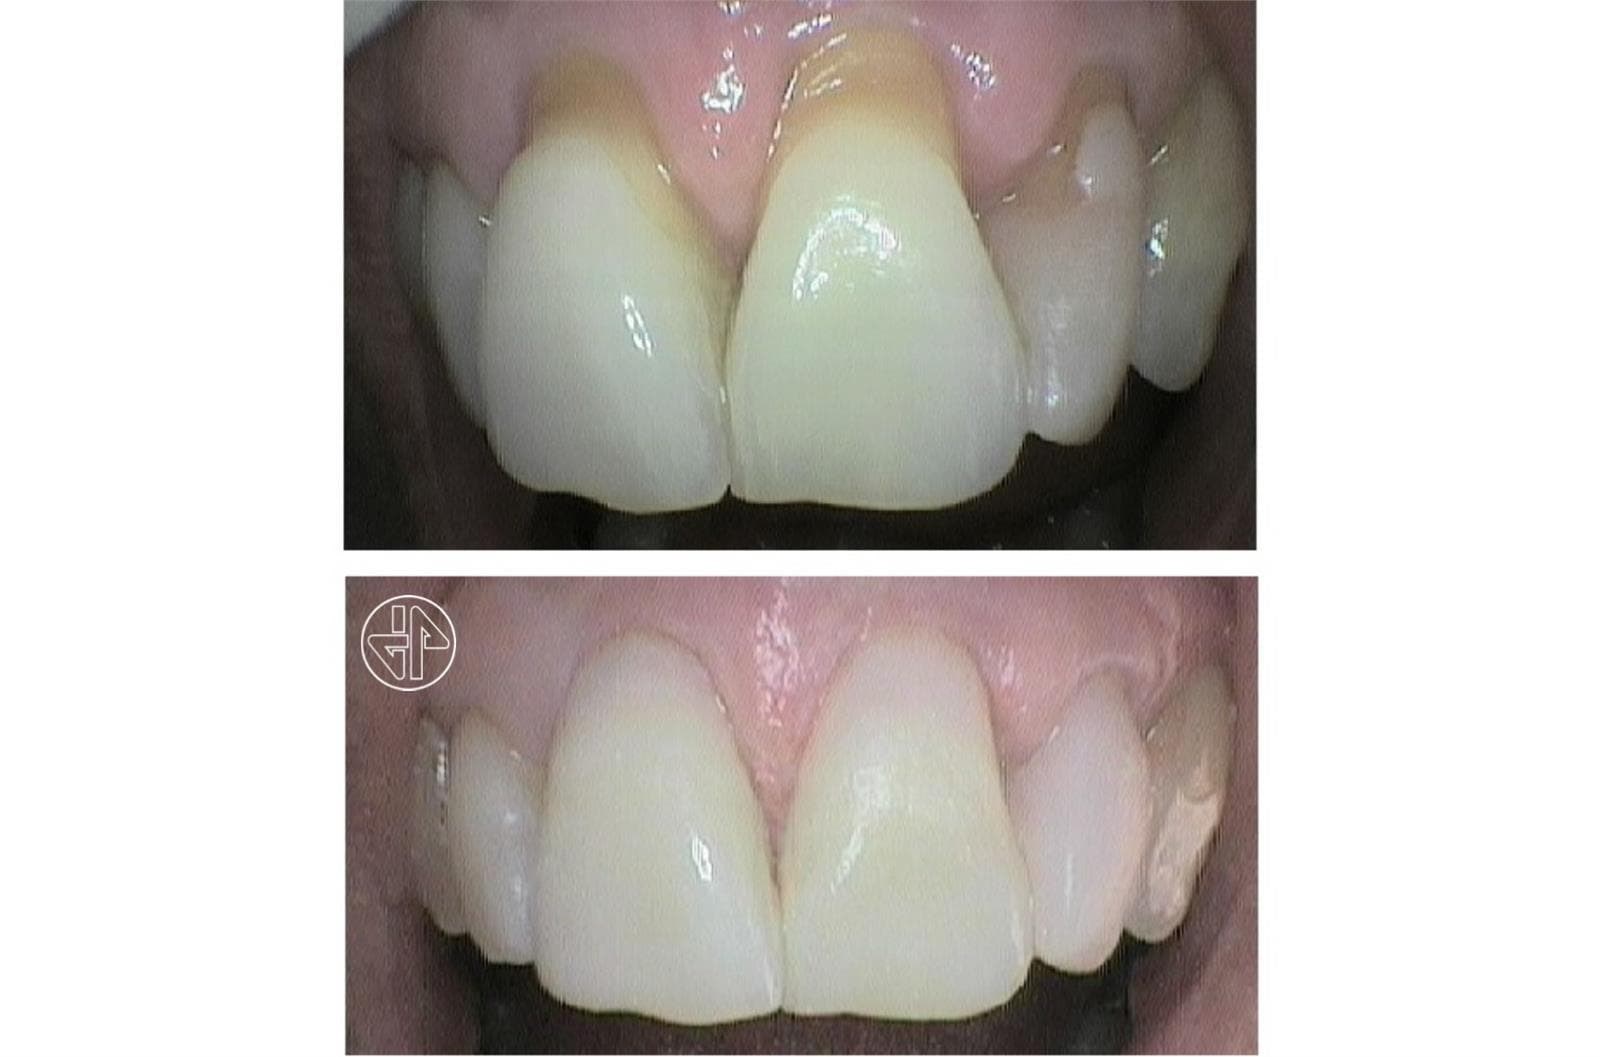 Abfracción Dental - Imagen 3